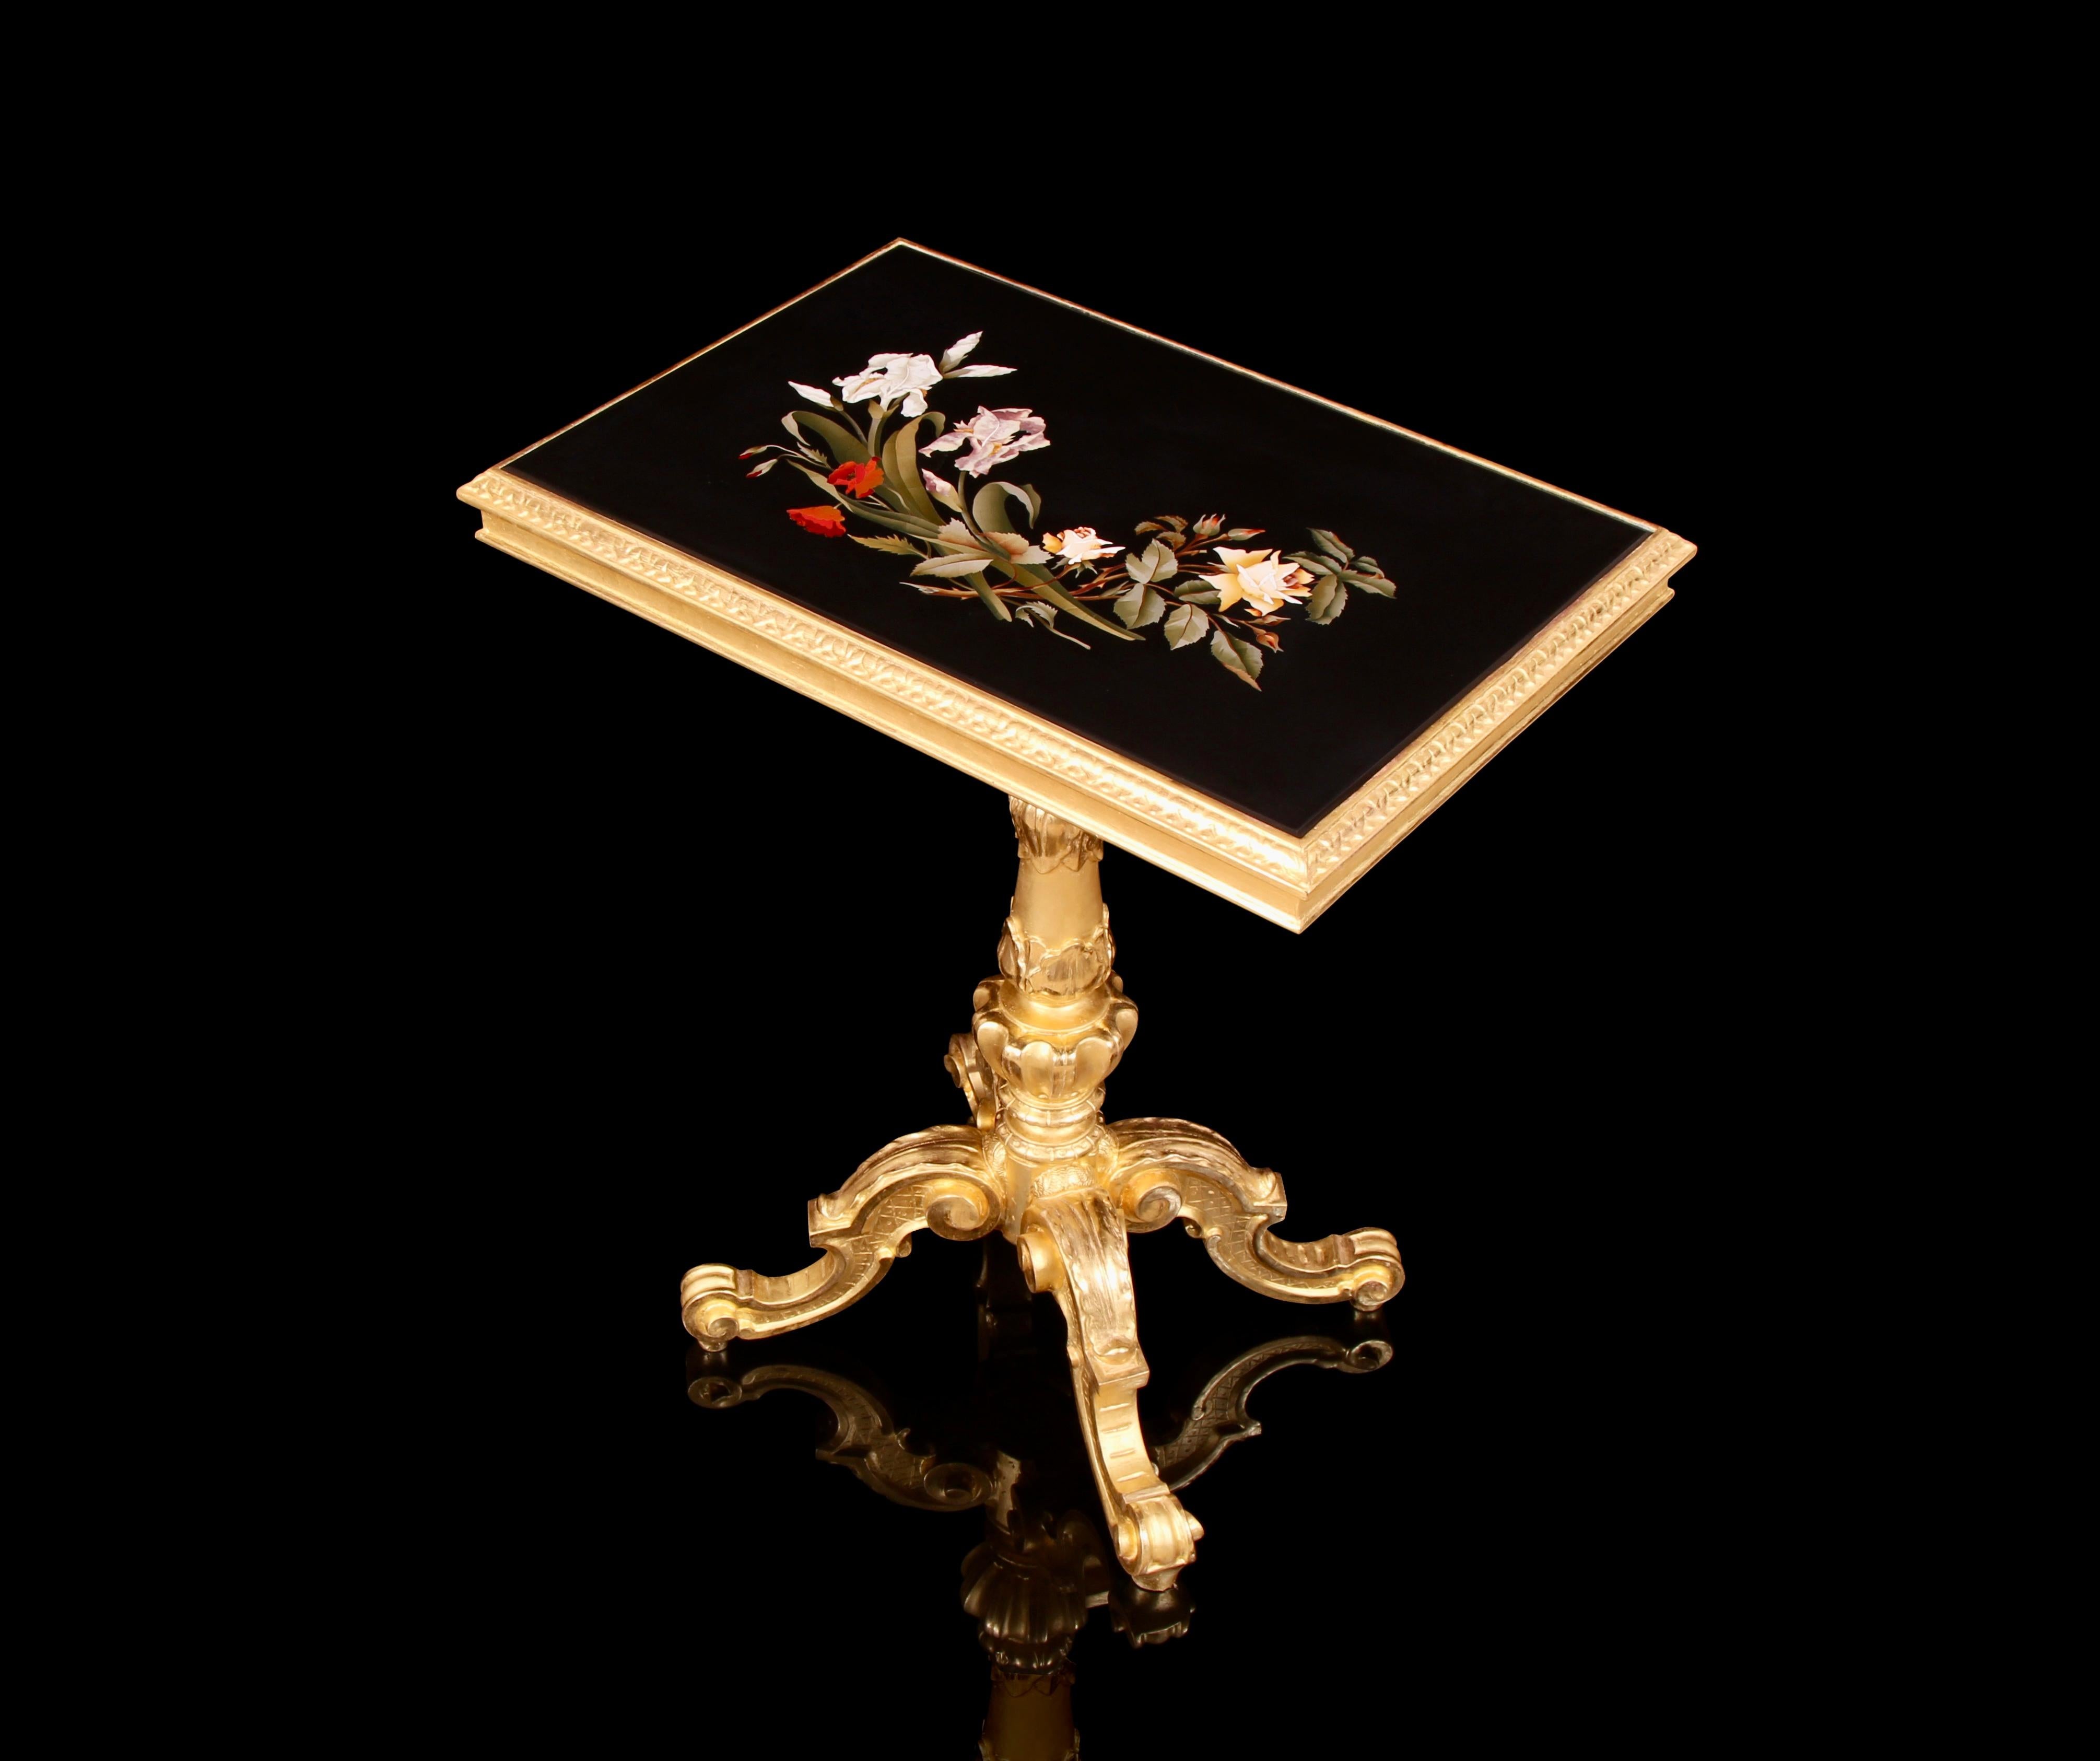 Importante et rare table centrale en bois doré Pietra Dura du 19ème siècle. Cette magnifique table rectangulaire comprend une œuvre d'art en Pietra Dura Florentine délicieusement incrustée. Les spécimens de pierre dure, incroyables et colorés, ont